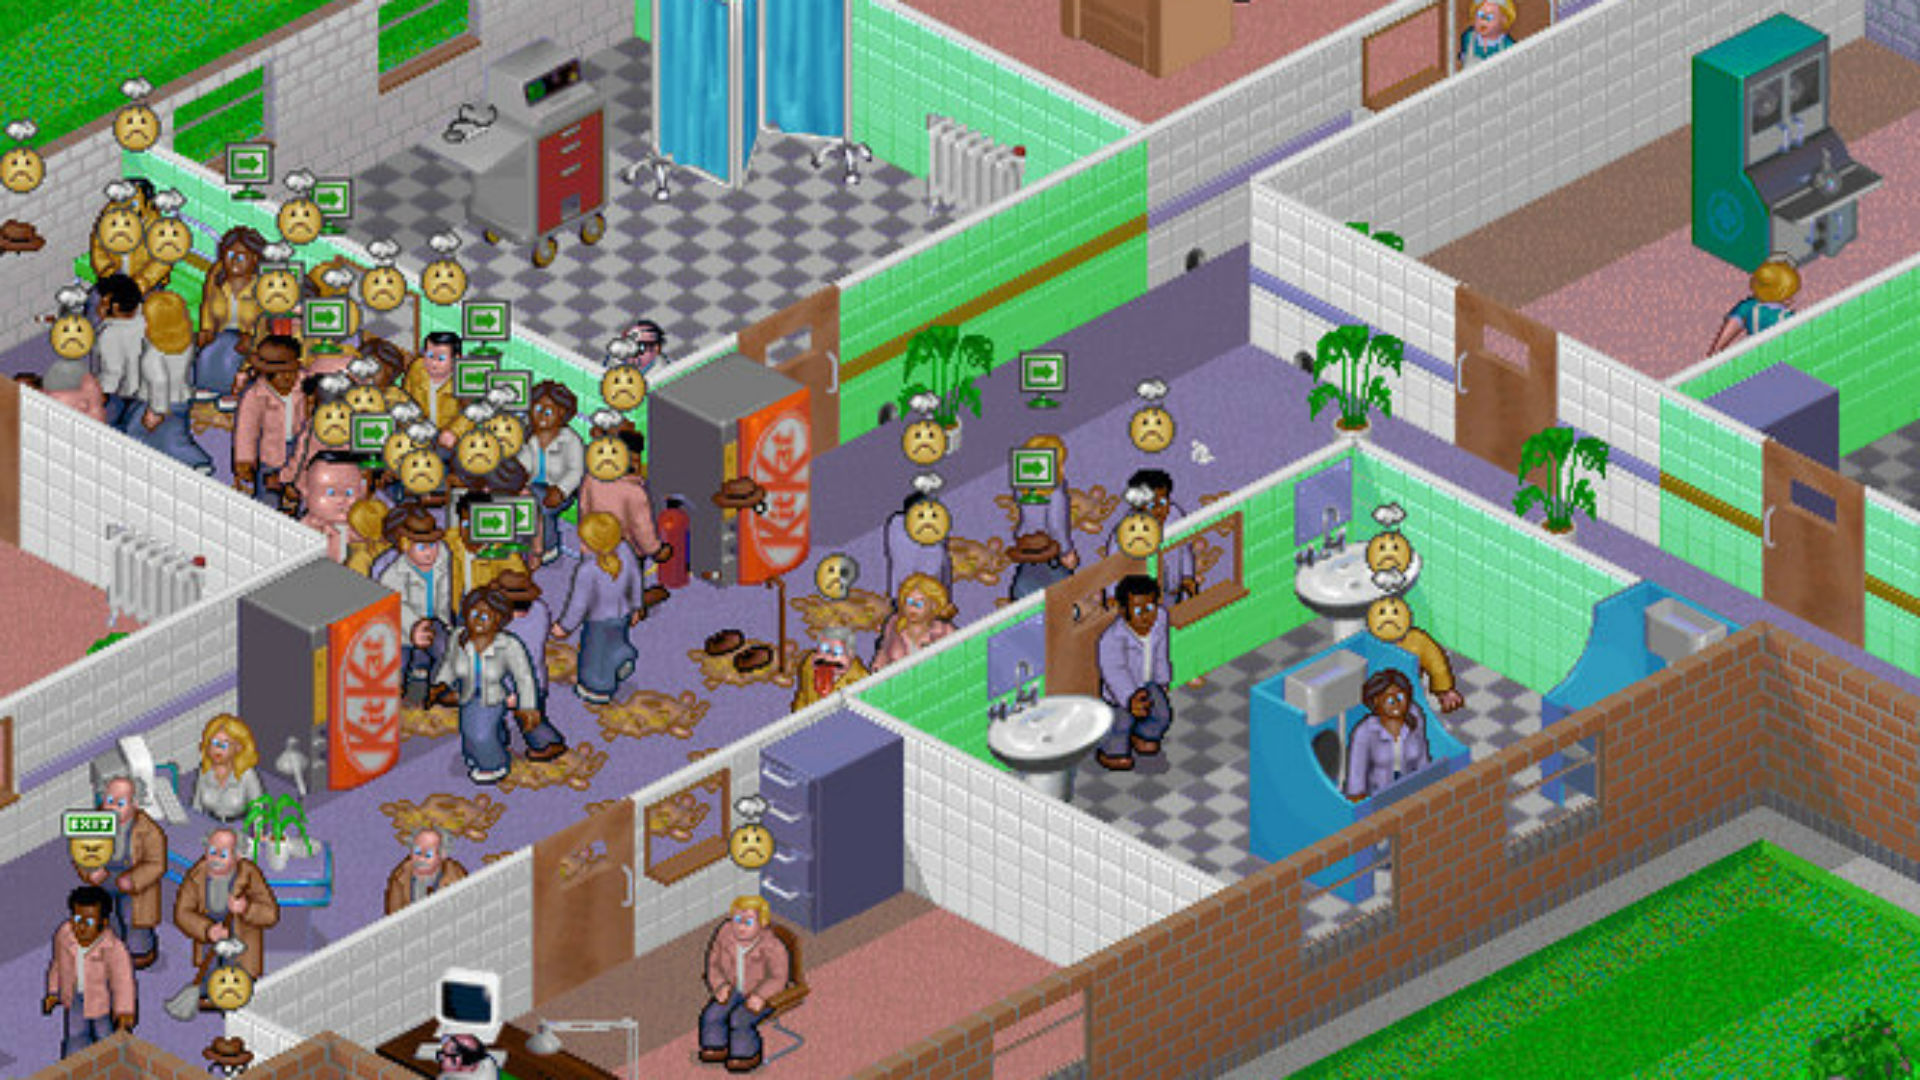 Αρκετοί ασθενείς συγκεντρώνονται σε ένα διάδρομο στο θεματικό νοσοκομείο, ένα από τα καλύτερα παλιά παιχνίδια